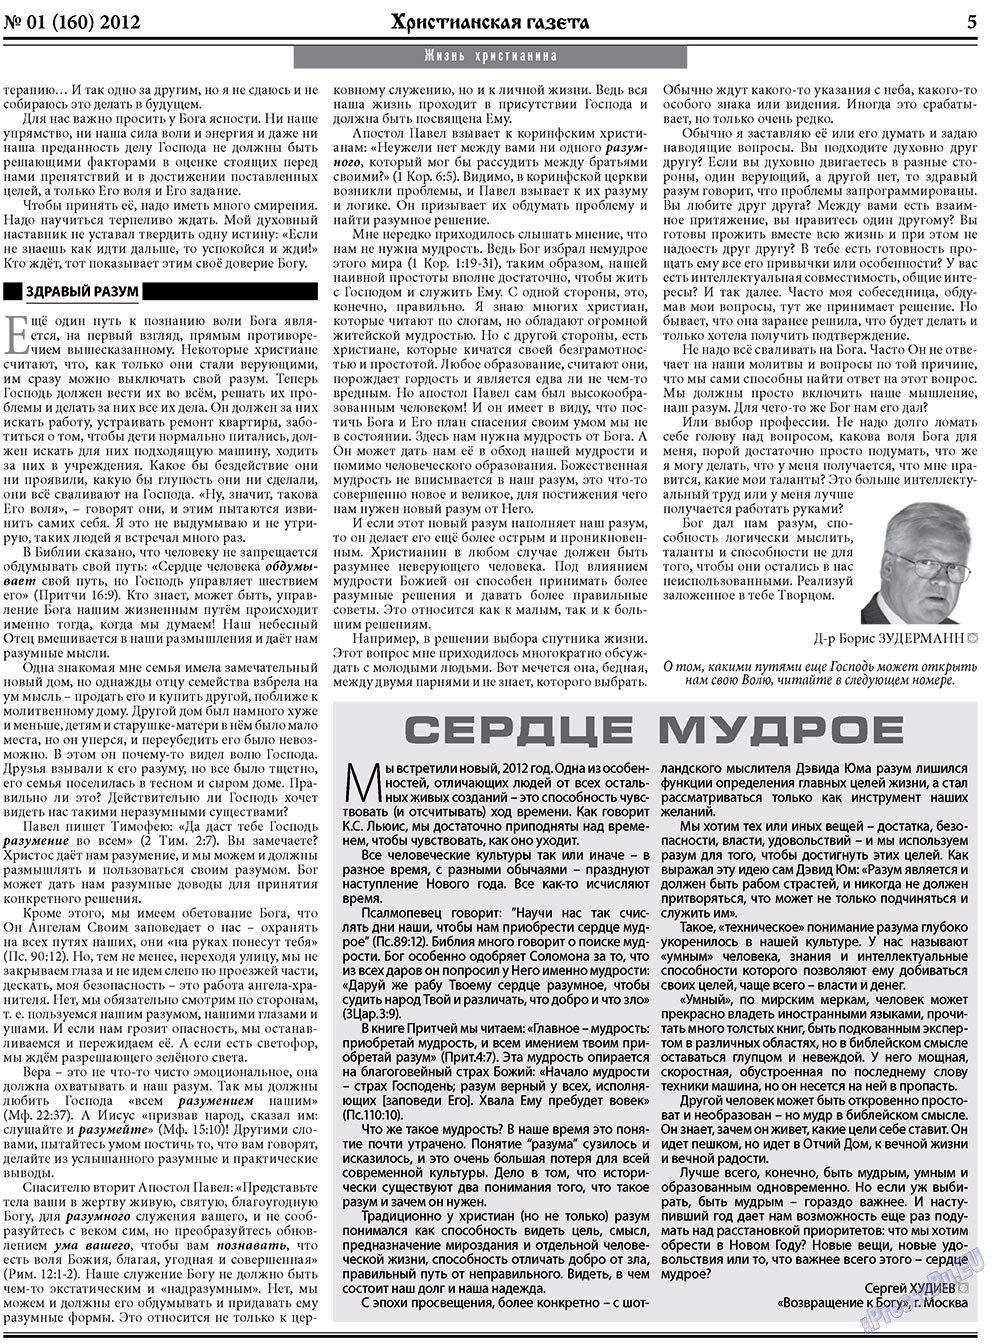 Христианская газета, газета. 2012 №1 стр.5